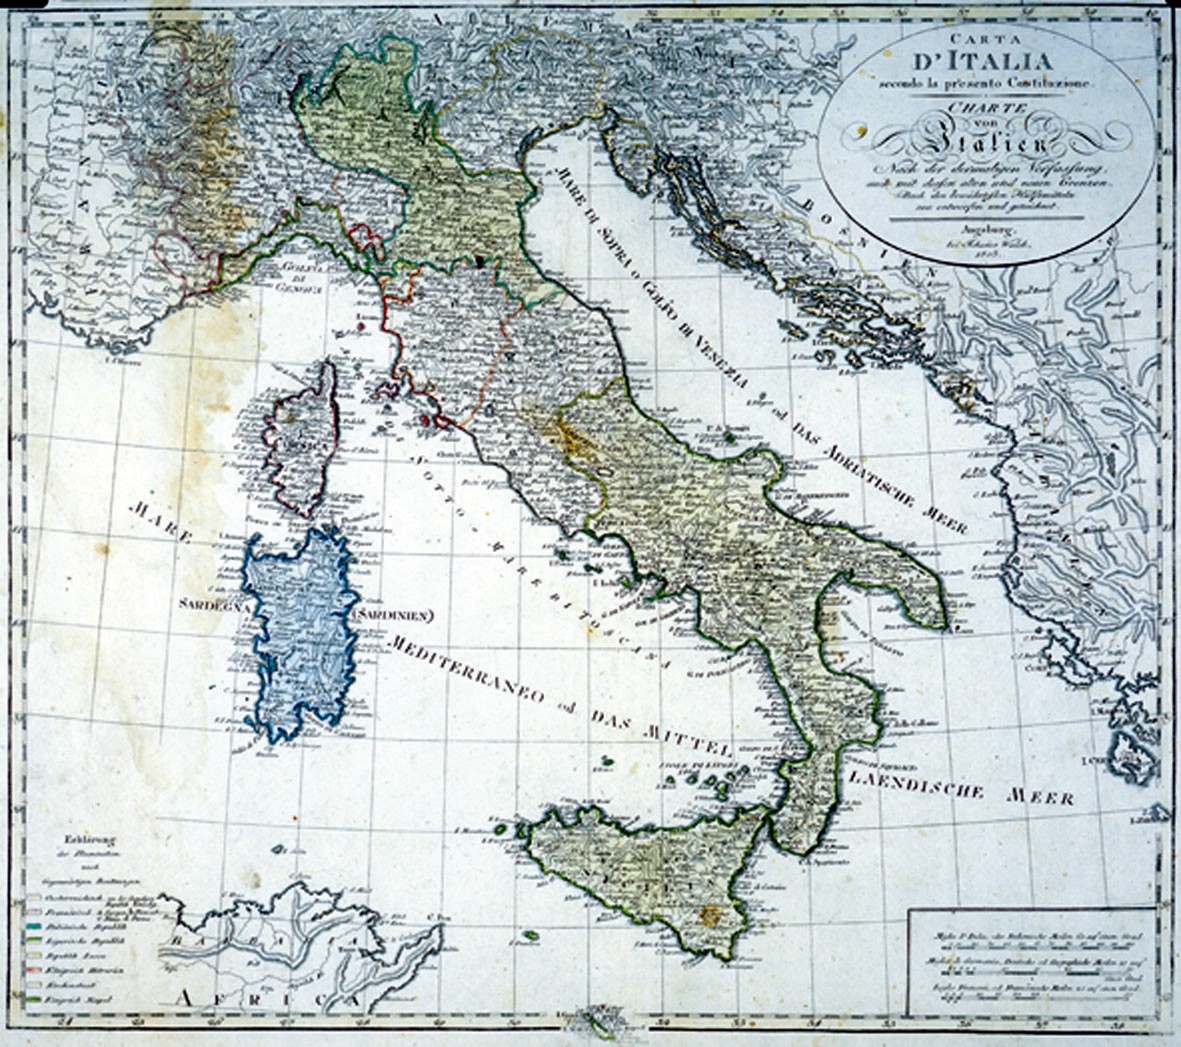 Cartina d'Italia nel 1803 (Dipartimento di Scienze Geografiche e Storiche, Università degli Studi di Trieste)